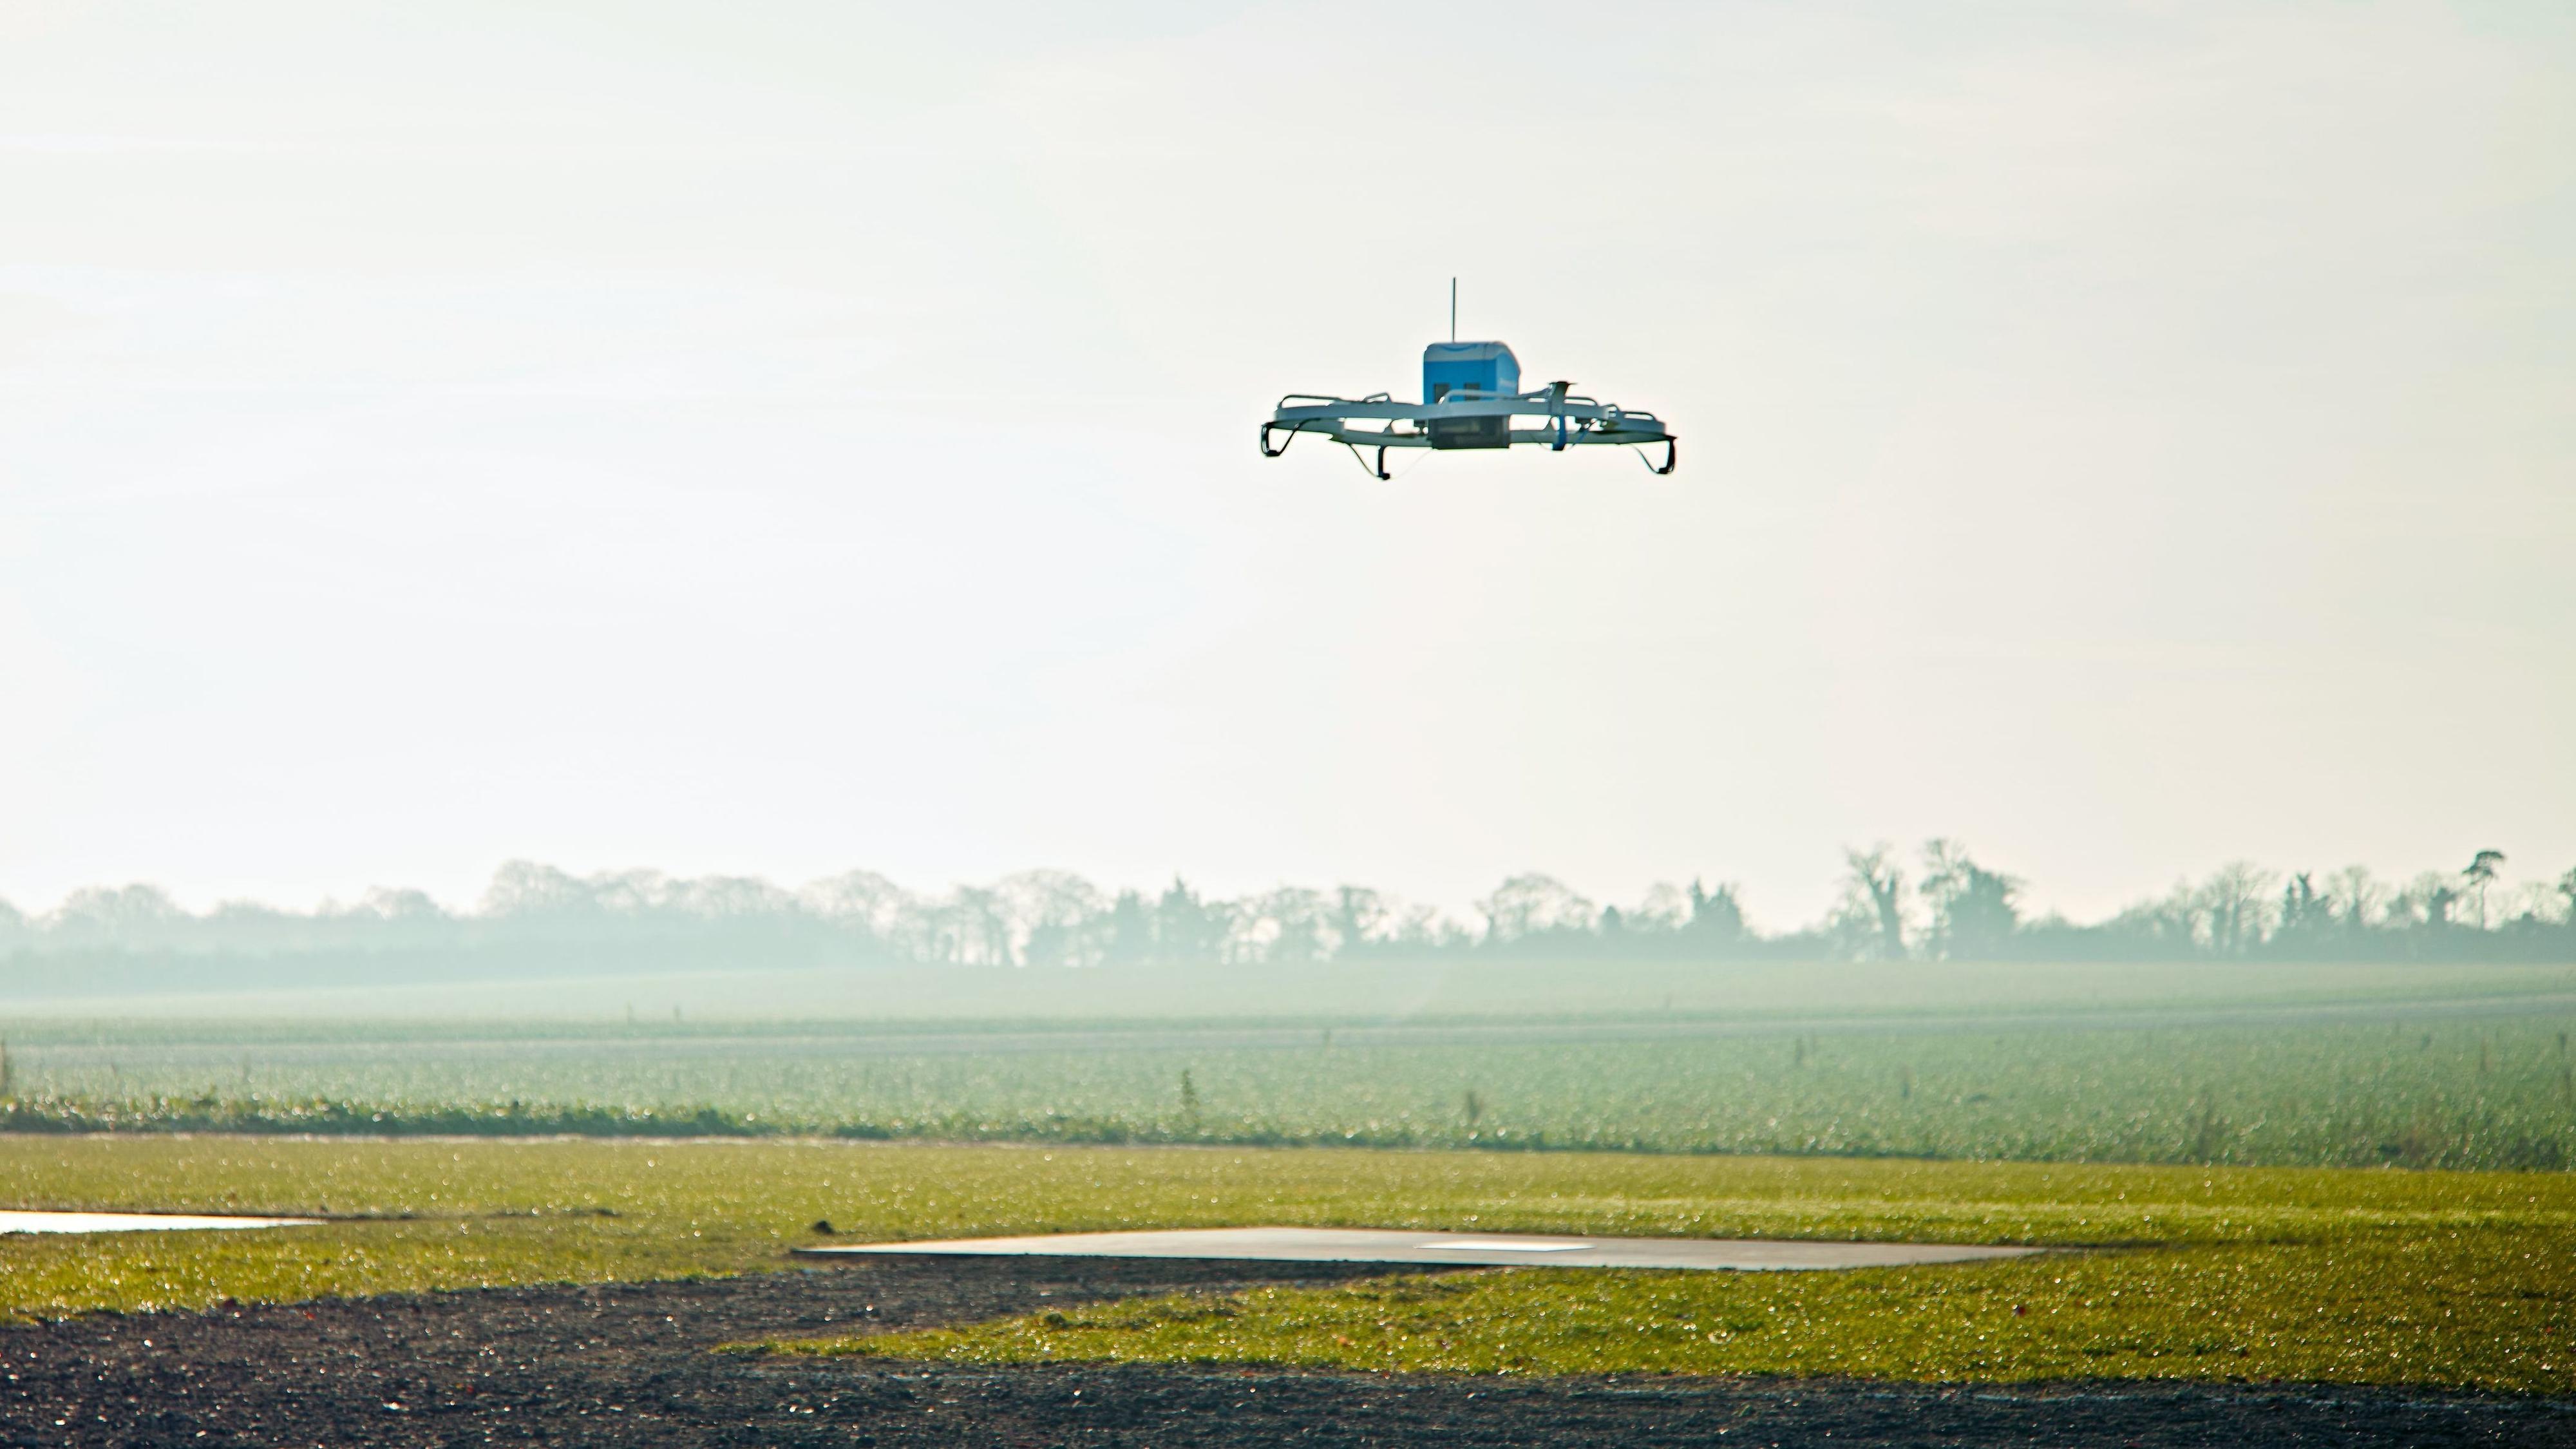 Her leverer Amazon sin første pakke med drone